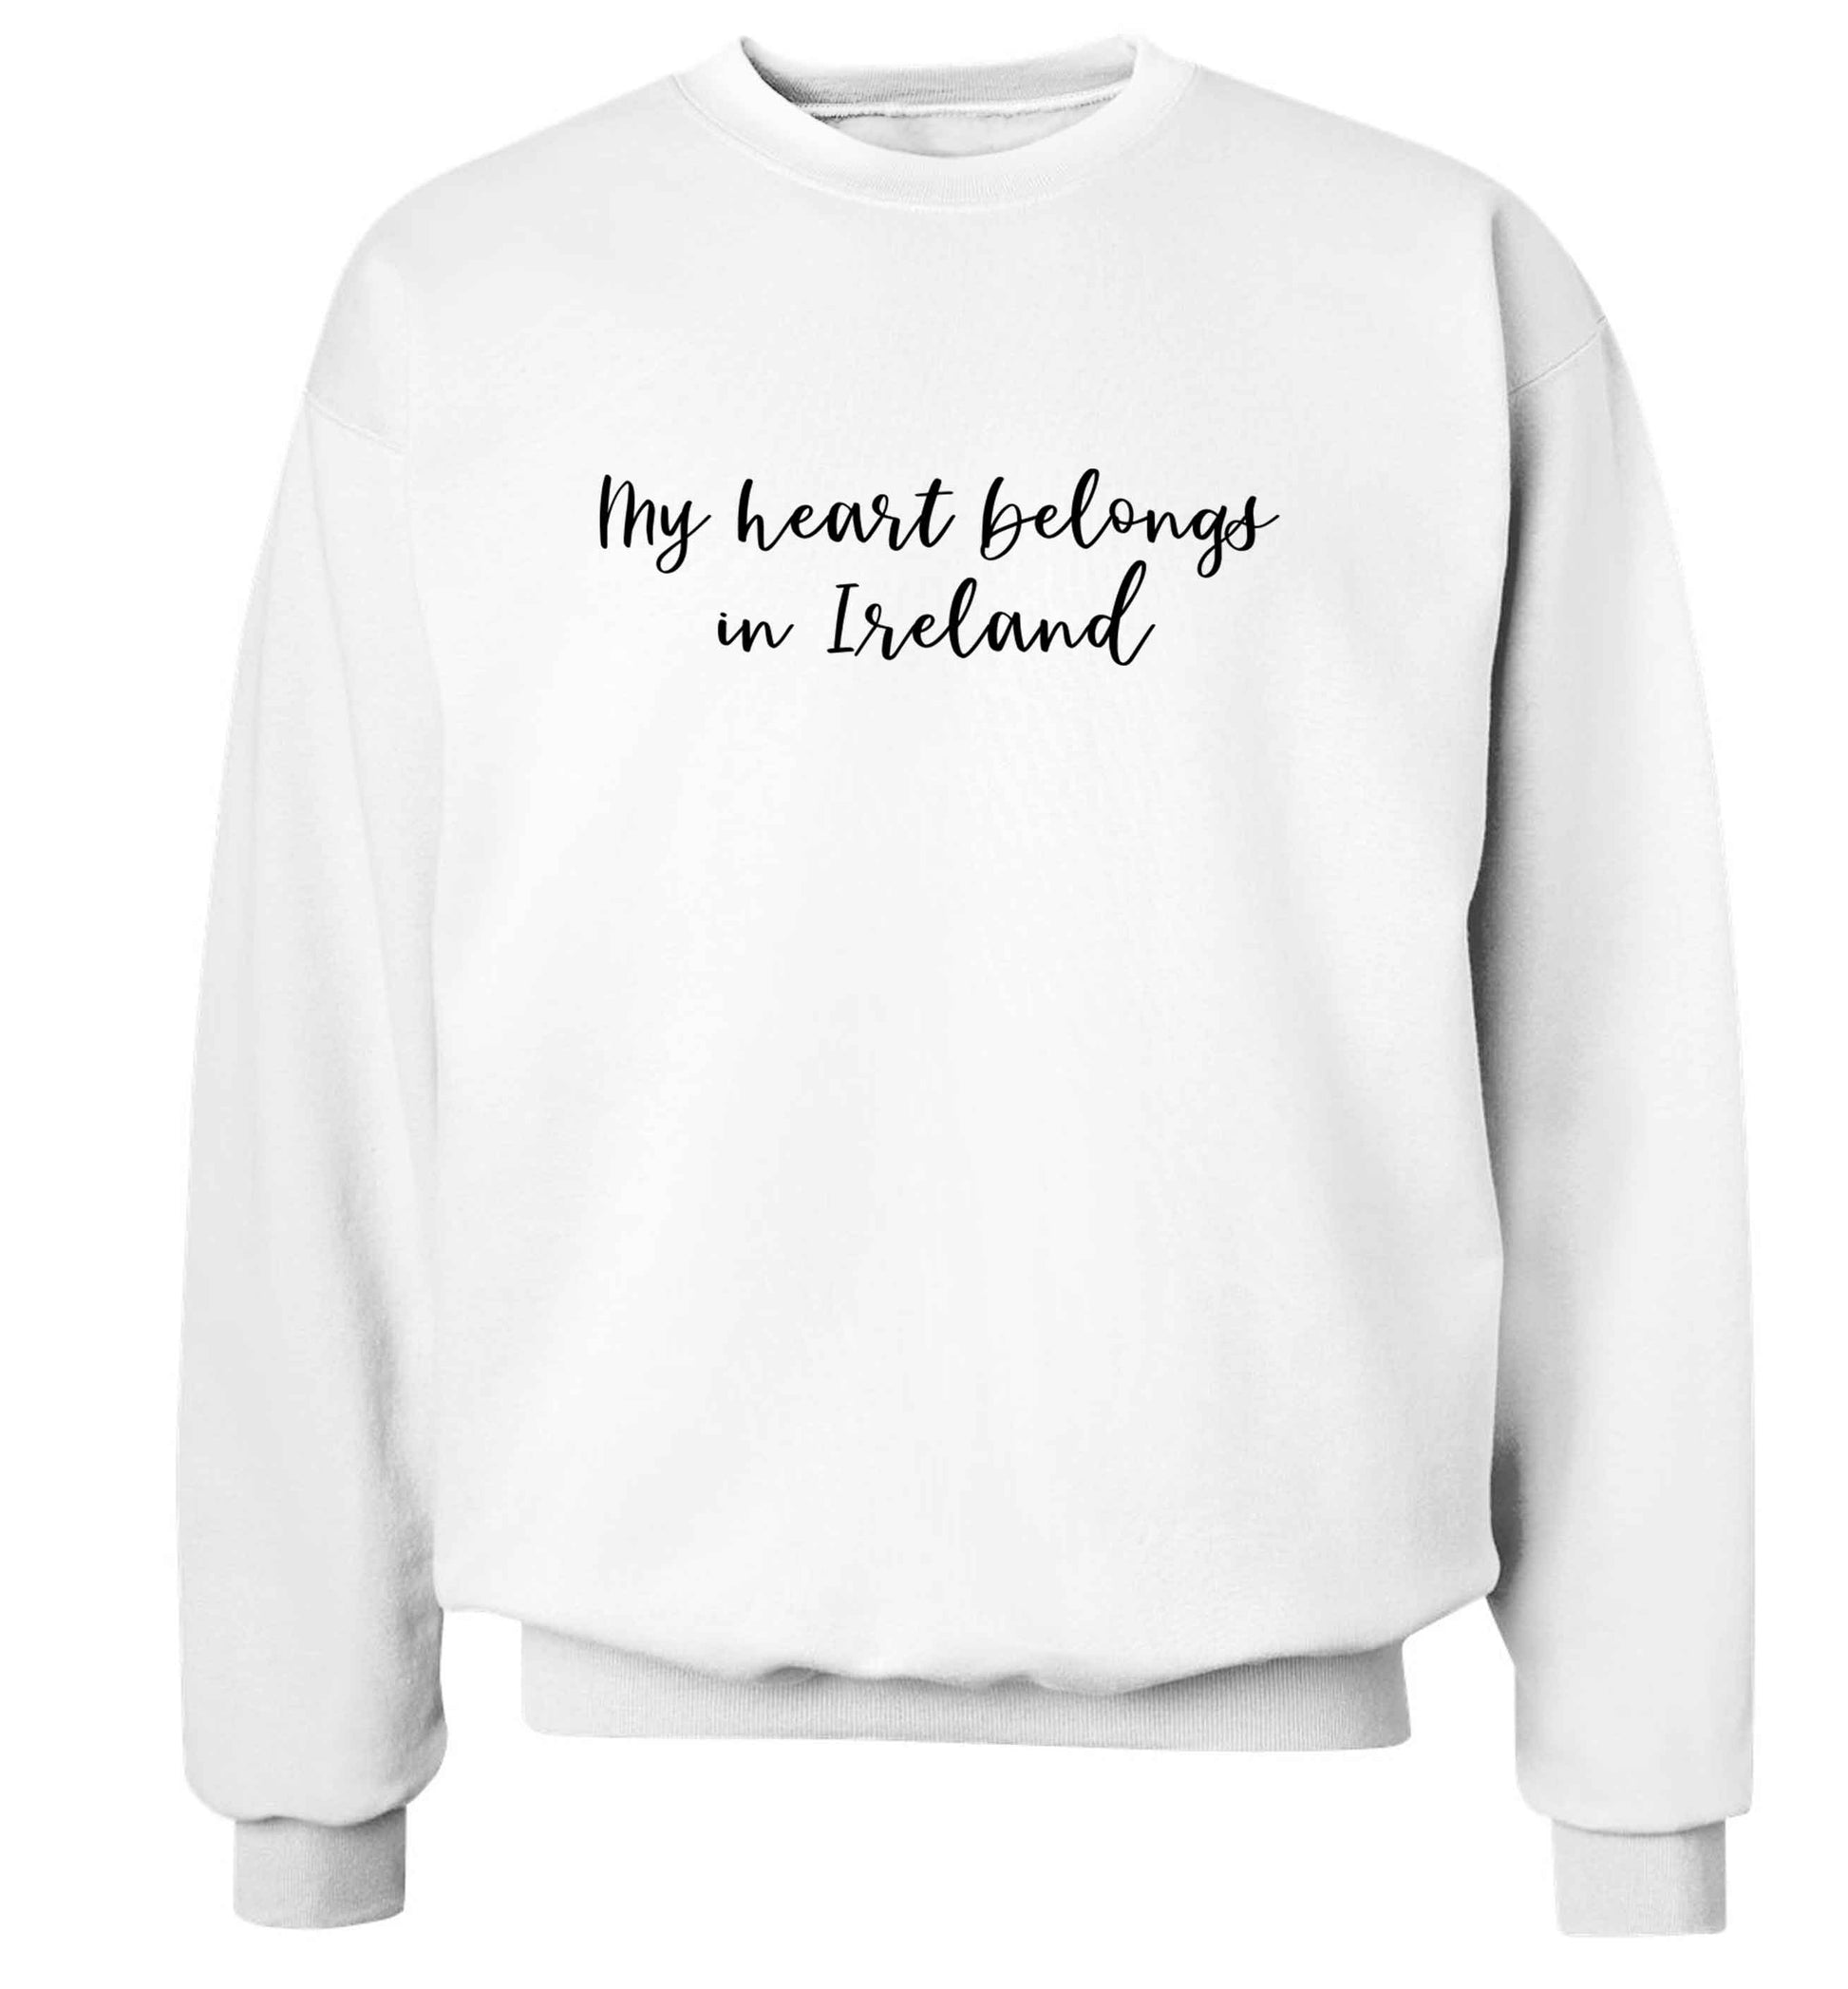 My heart belongs in Ireland adult's unisex white sweater 2XL